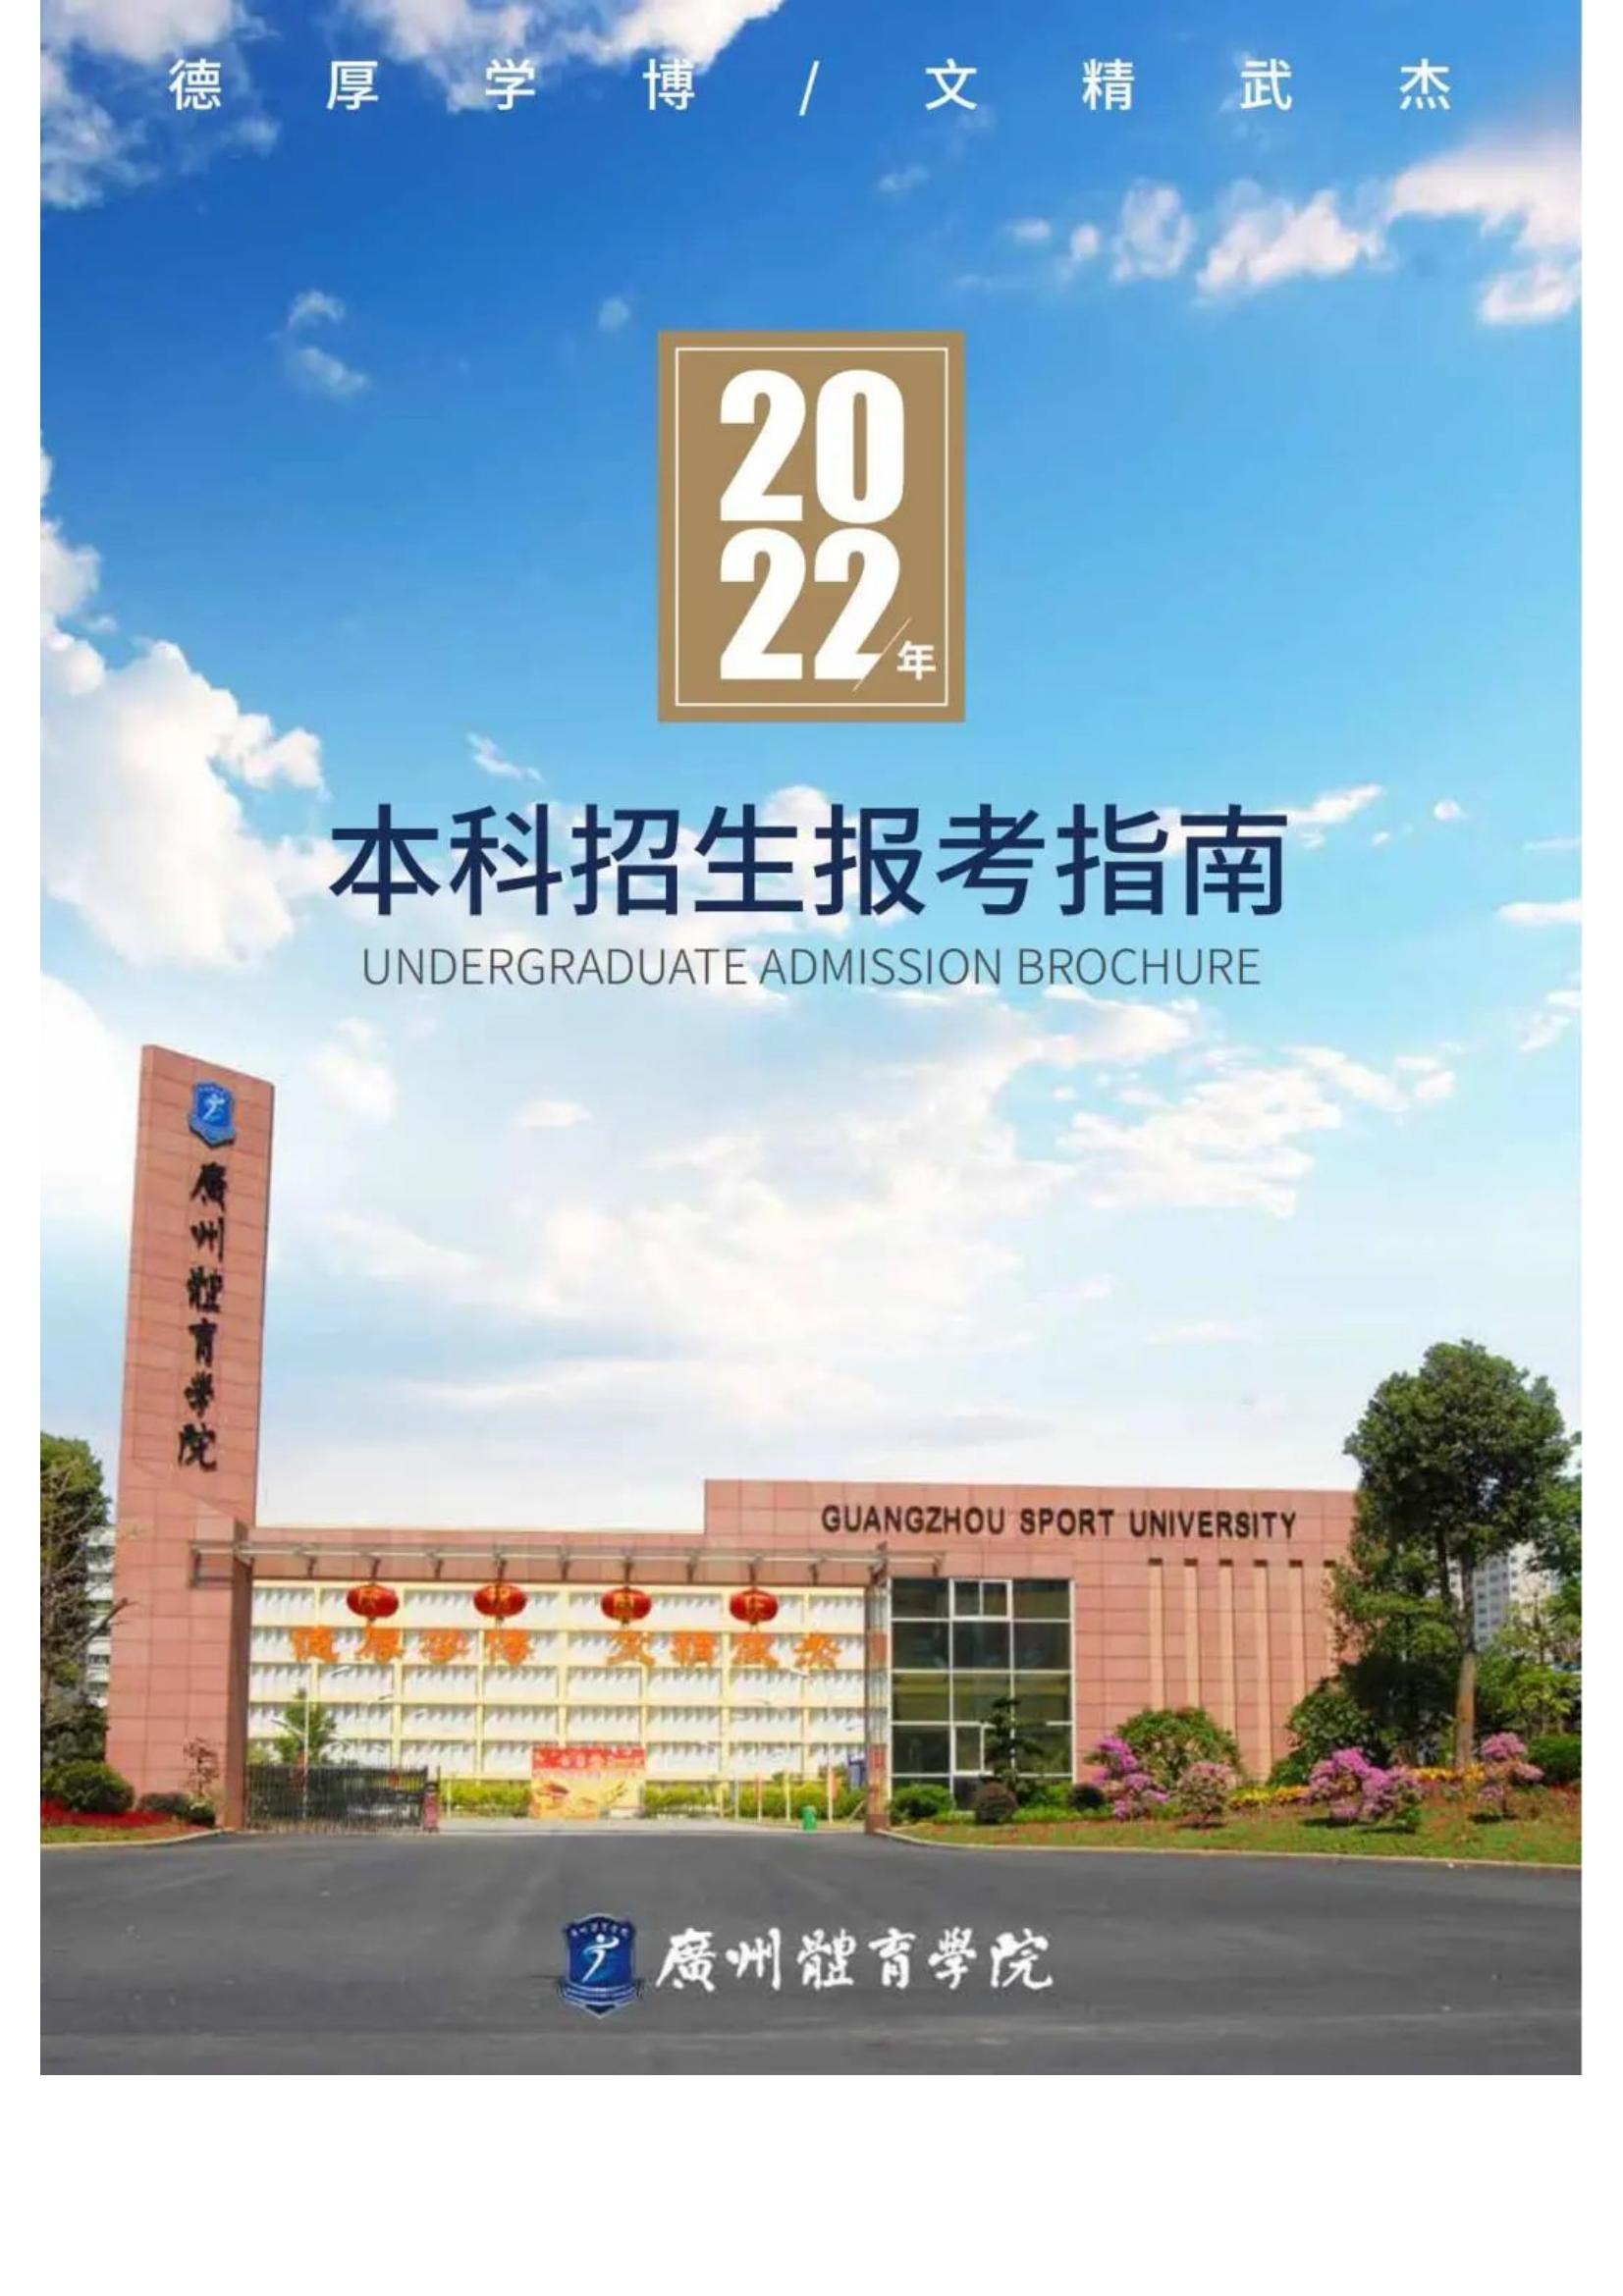 广州体育学院2022年报考指南发布_01.jpg